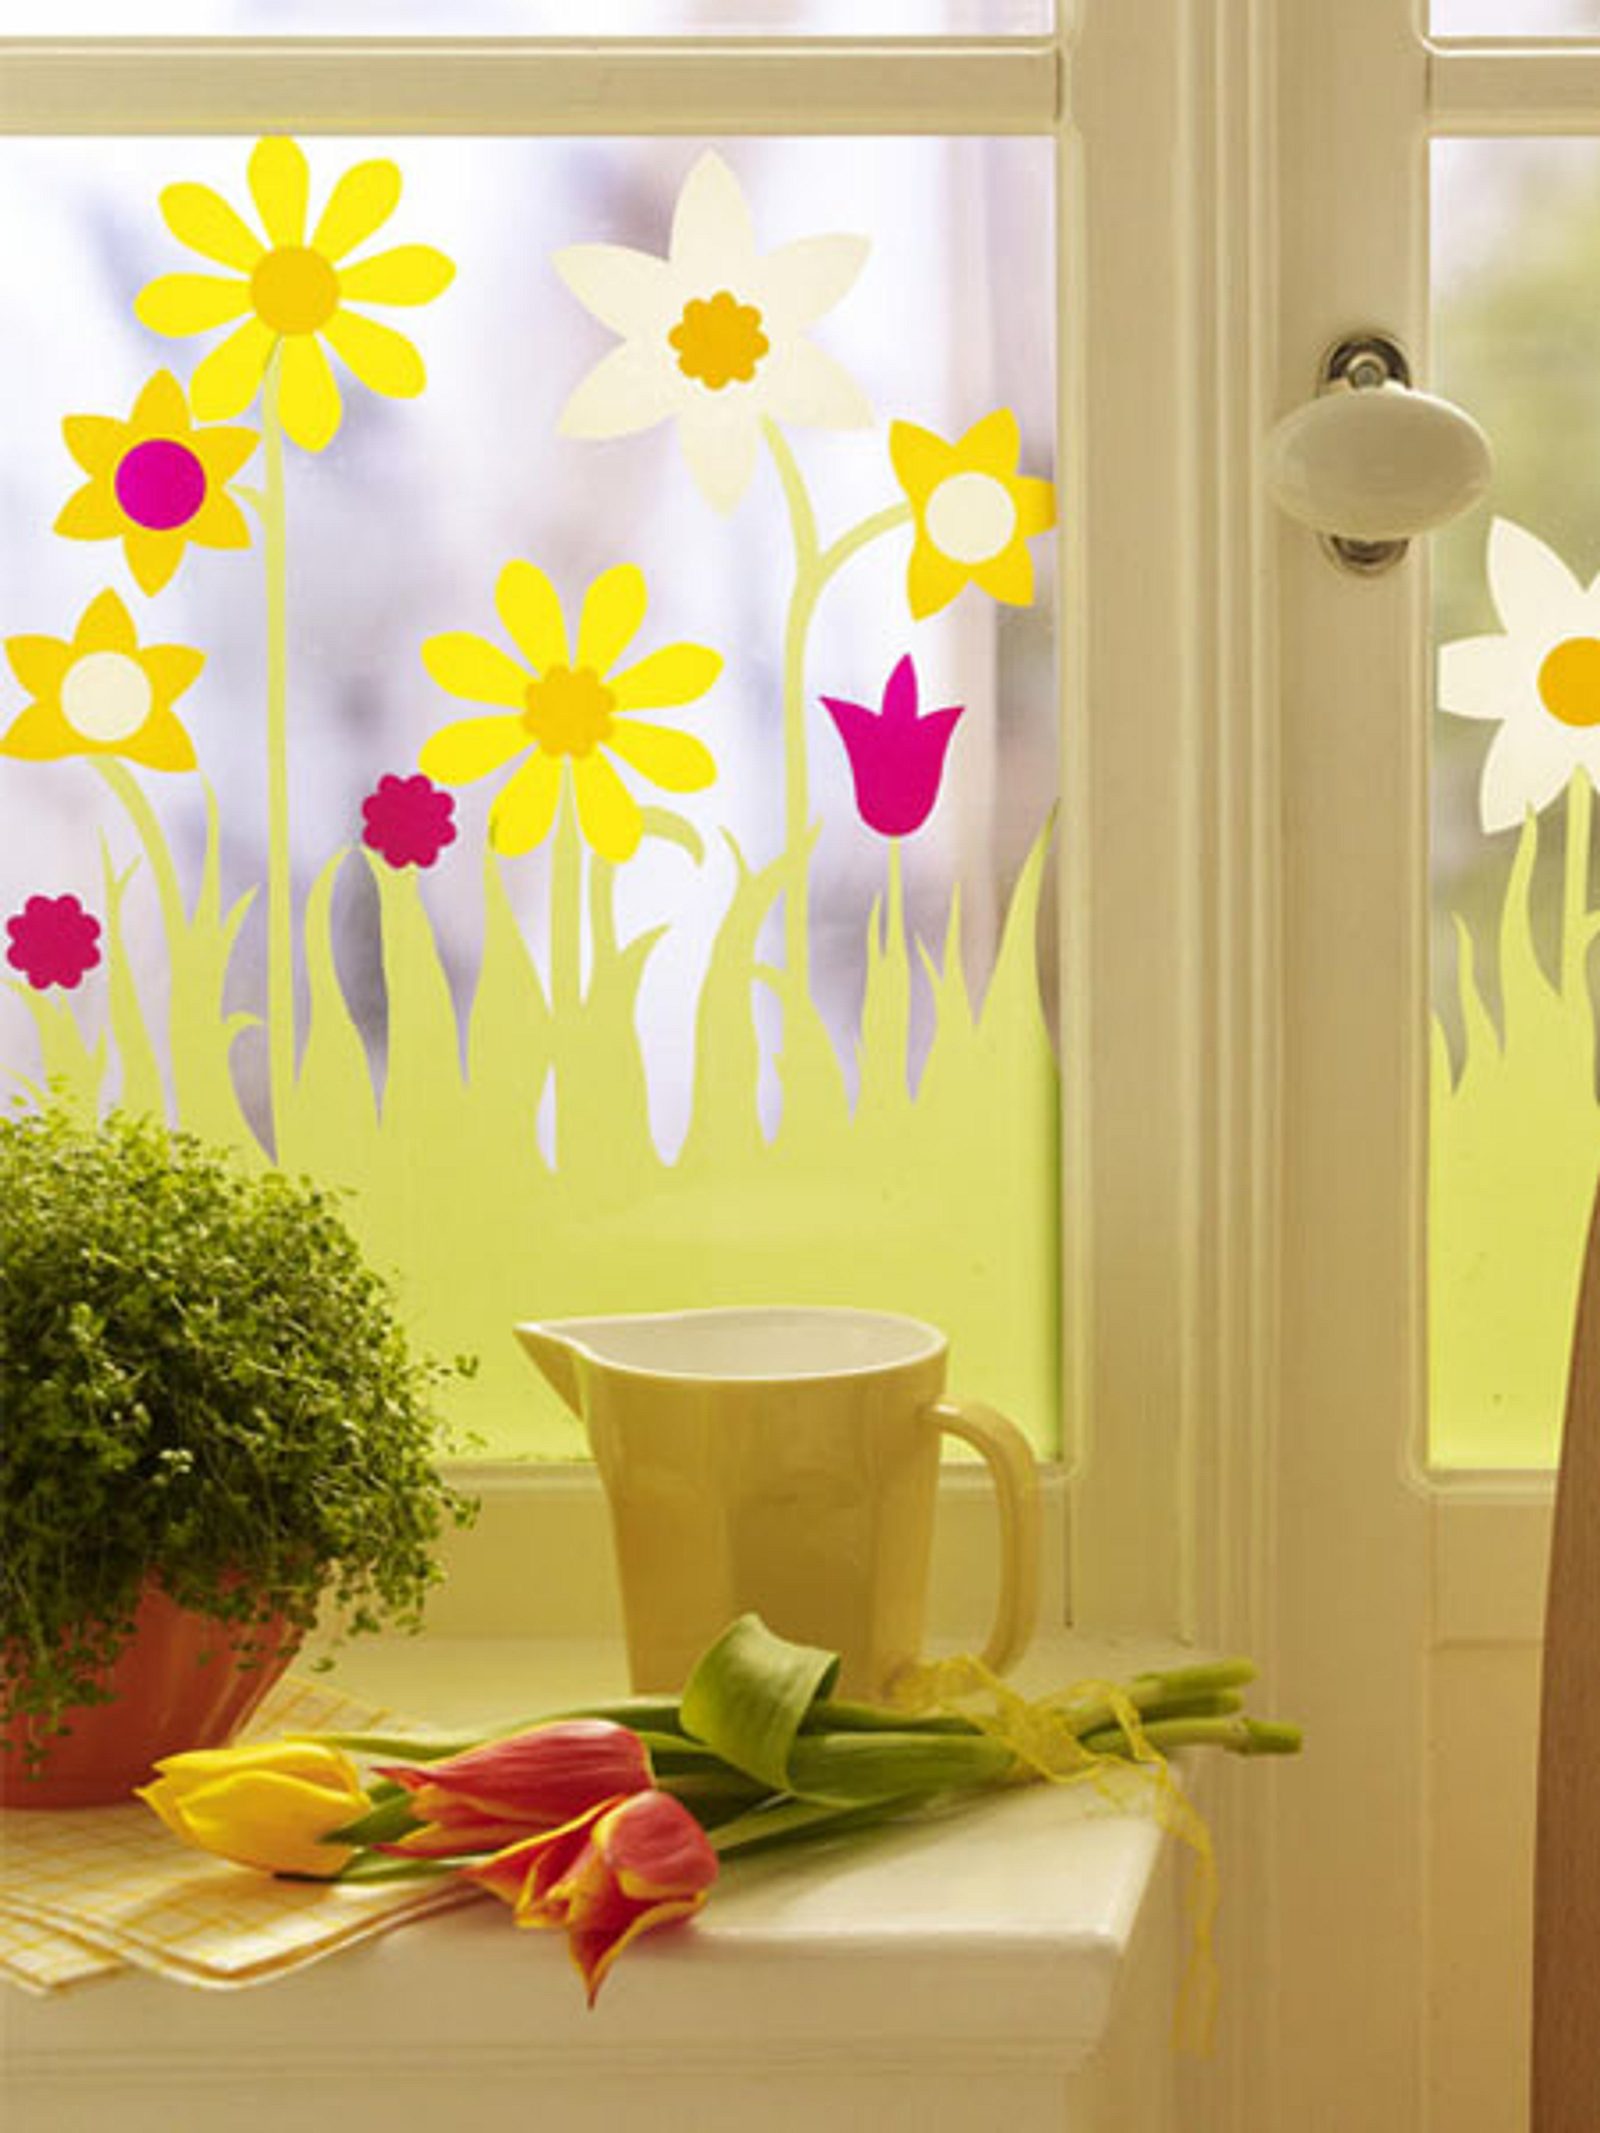 Fensterdeko zu Ostern selber machen: Kreative Bastel-Ideen für dein